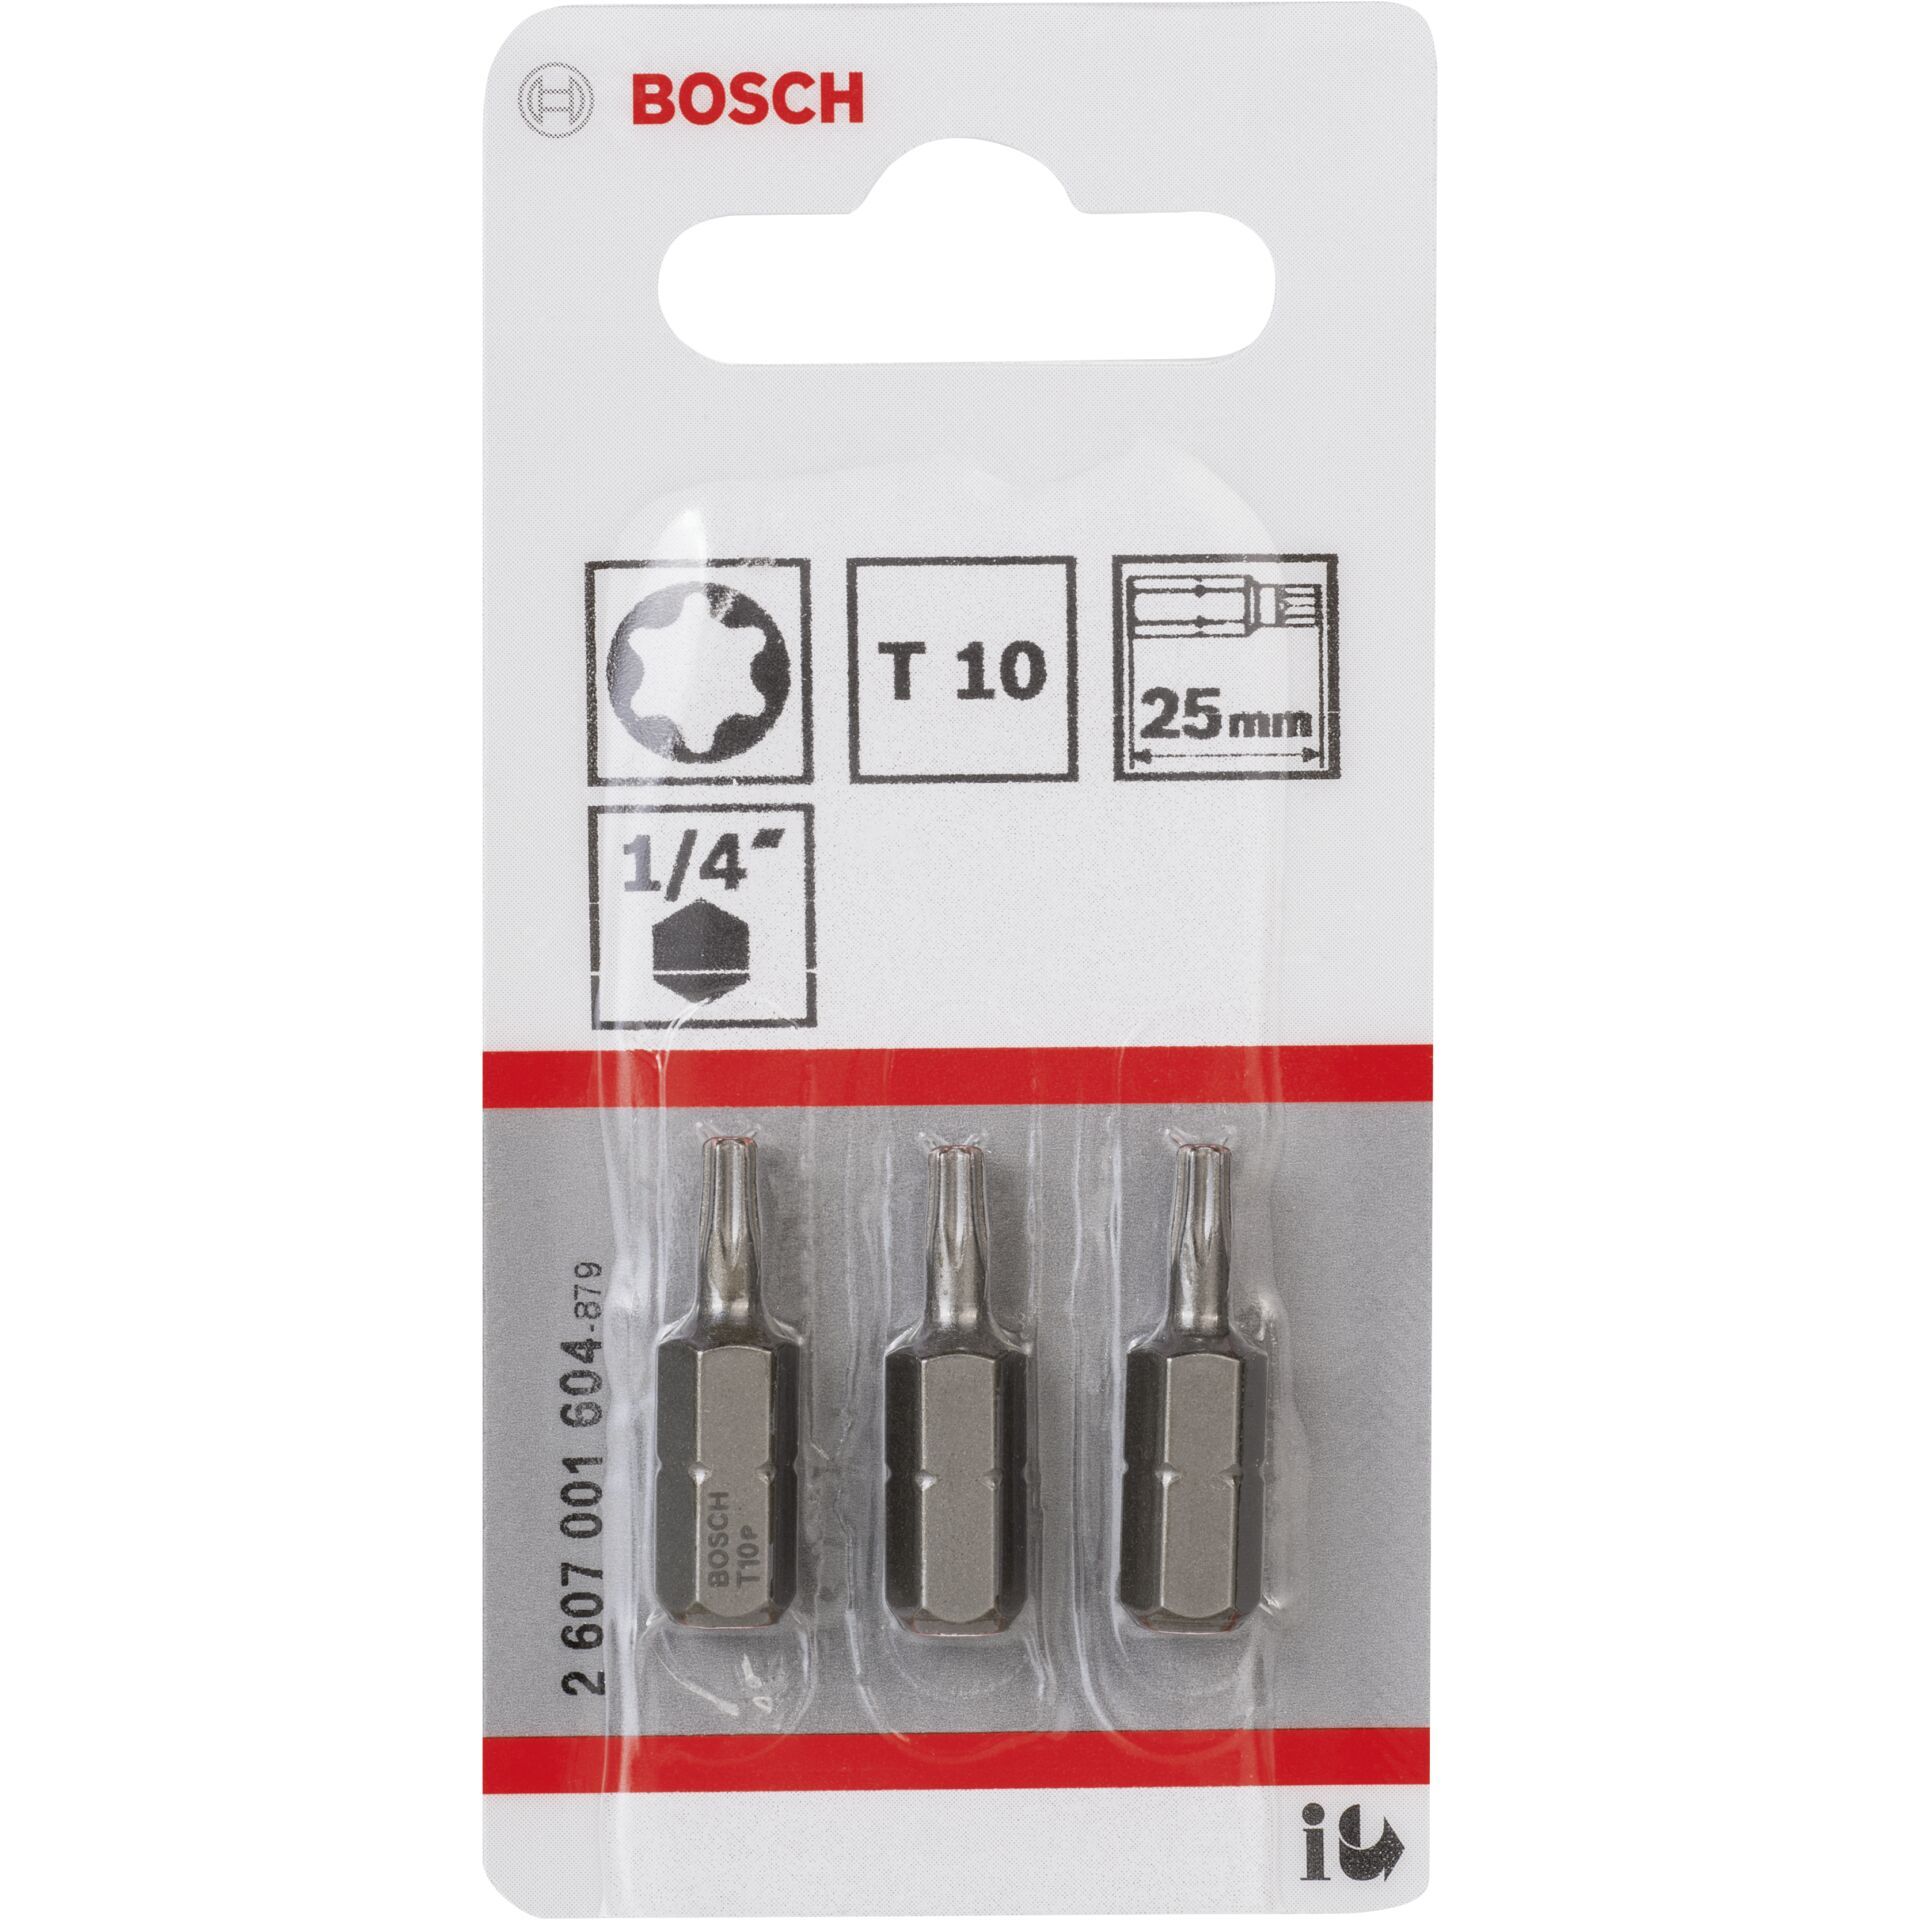 Bosch 3pcs. Screwdriver Bits T10 XH 25mm